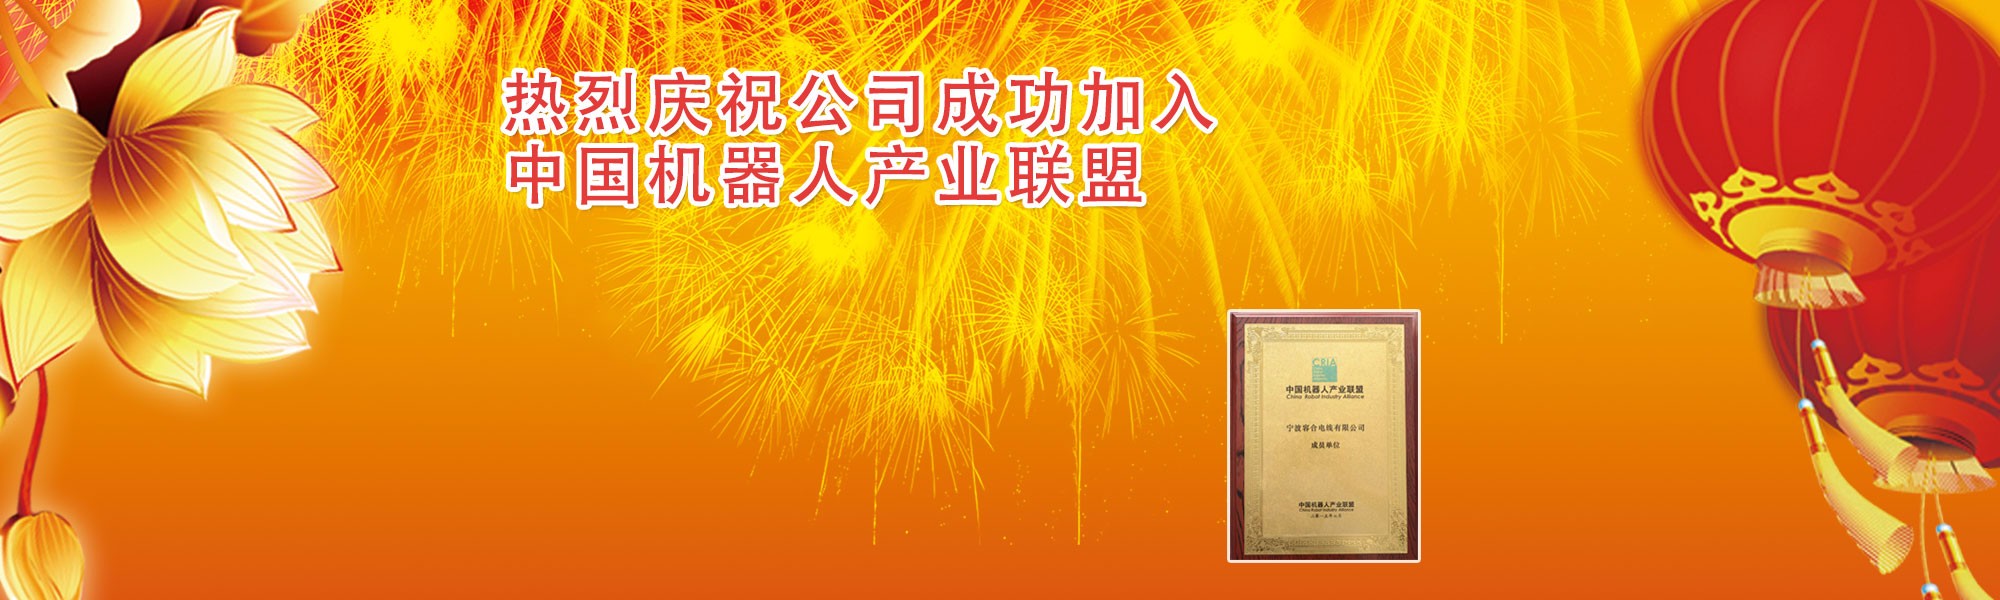 热烈庆祝成功加入中国机器人产业联盟